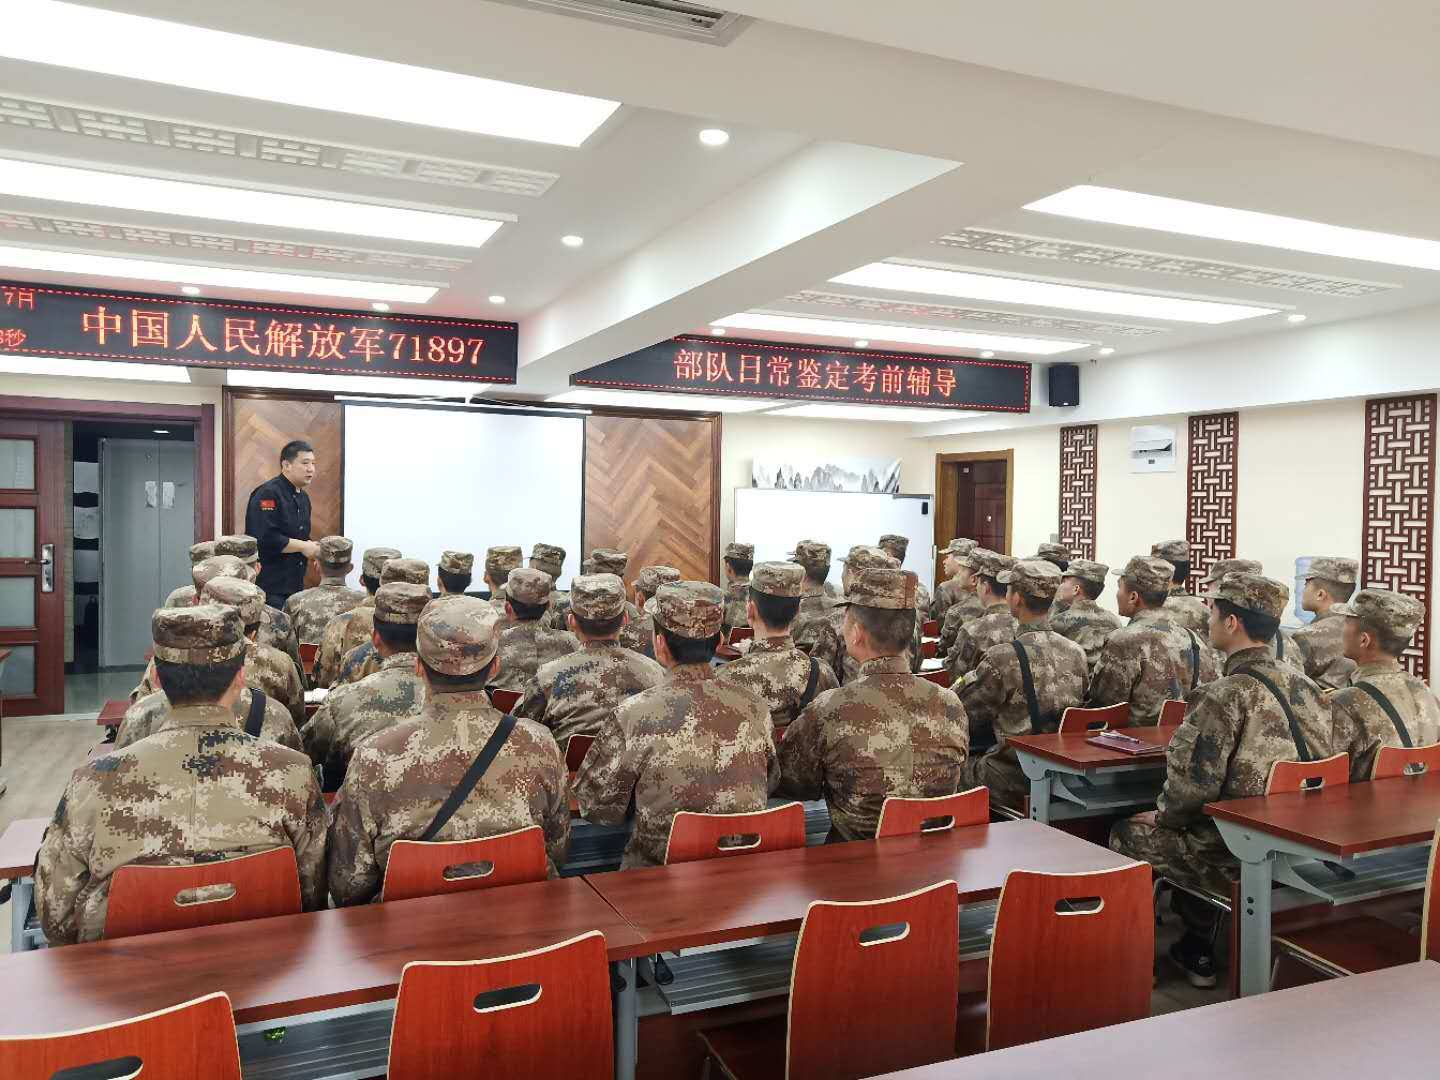 中国人民解放军71897部队日常鉴定考前辅导，在我校如期举行！